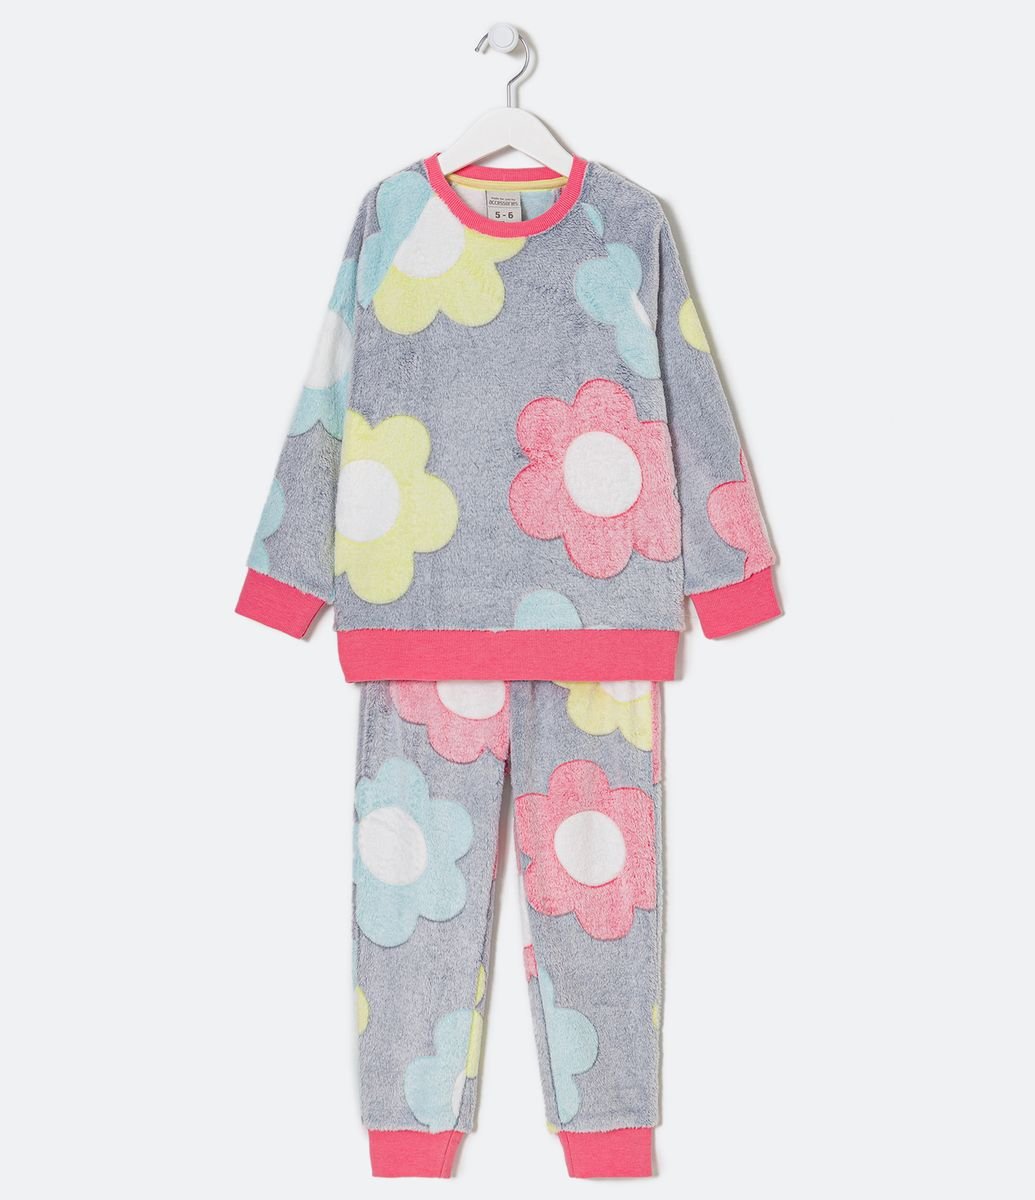 Pijamas para niños con personajes y estampados - Renner